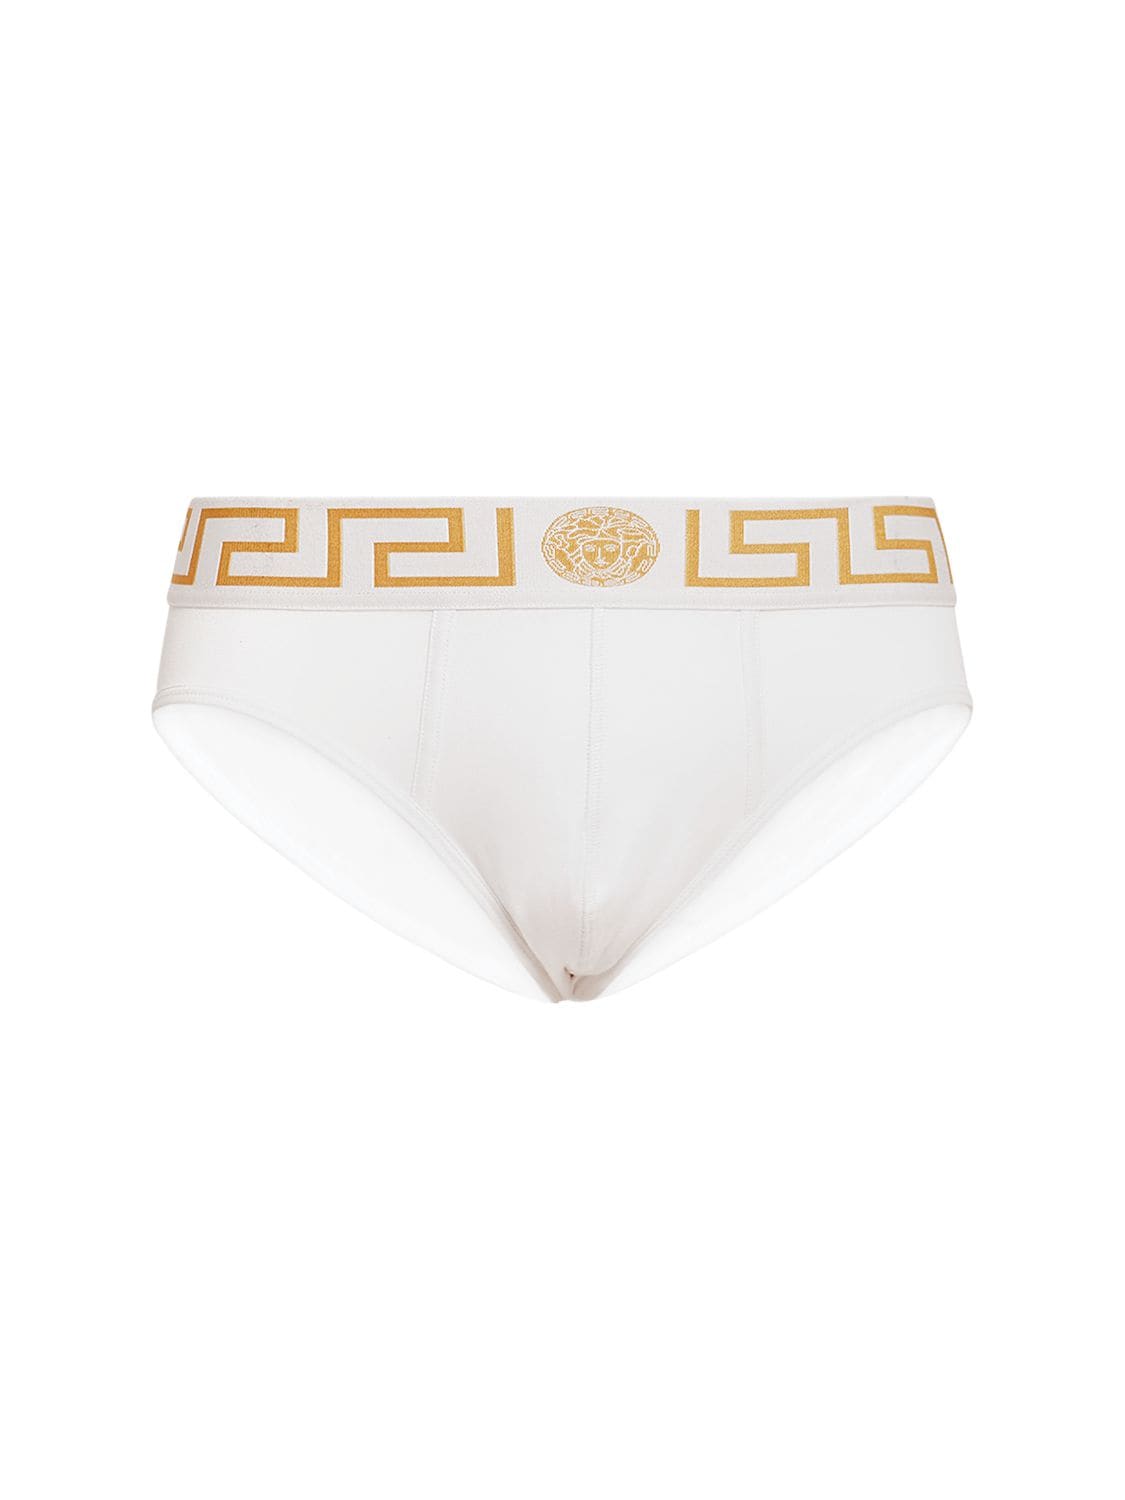 Versace Greca Logo Stretch Cotton Briefs In White,gold